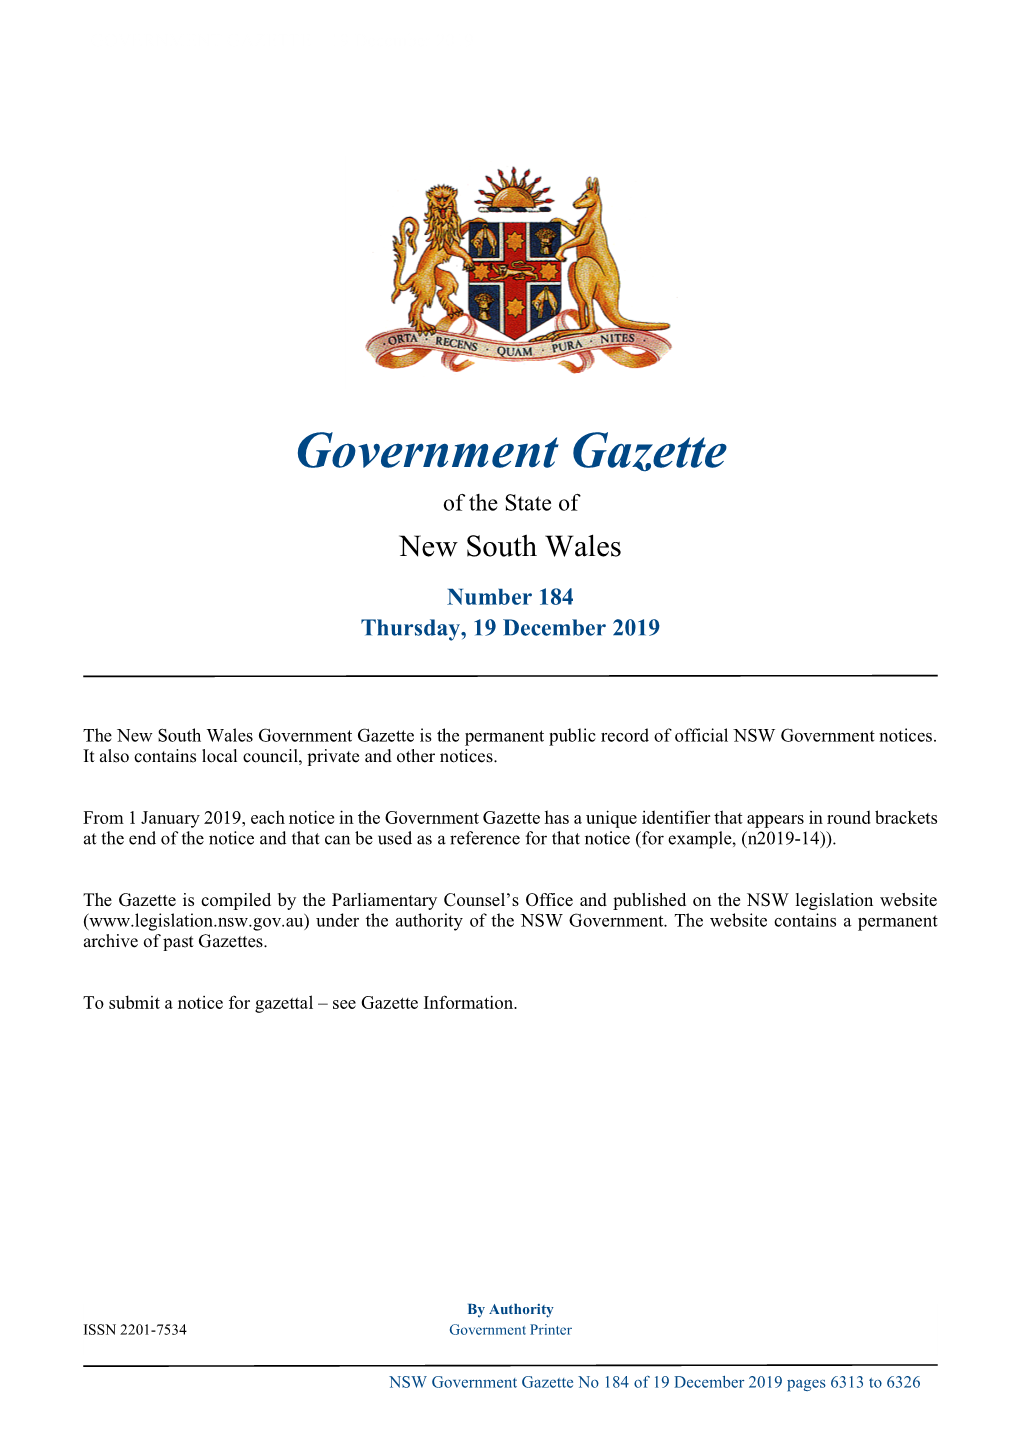 Government Gazette No 184 of Thursday 19 December 2019